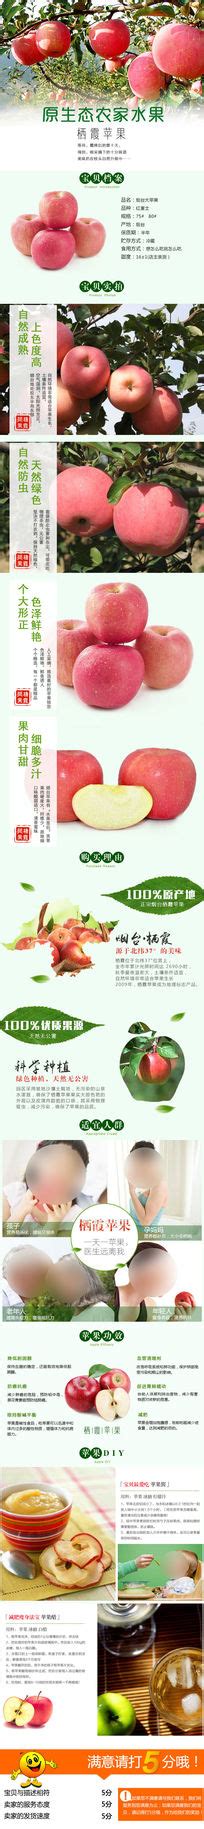 苹果淘宝详情页模板_苹果淘宝详情页设计素材_红动中国